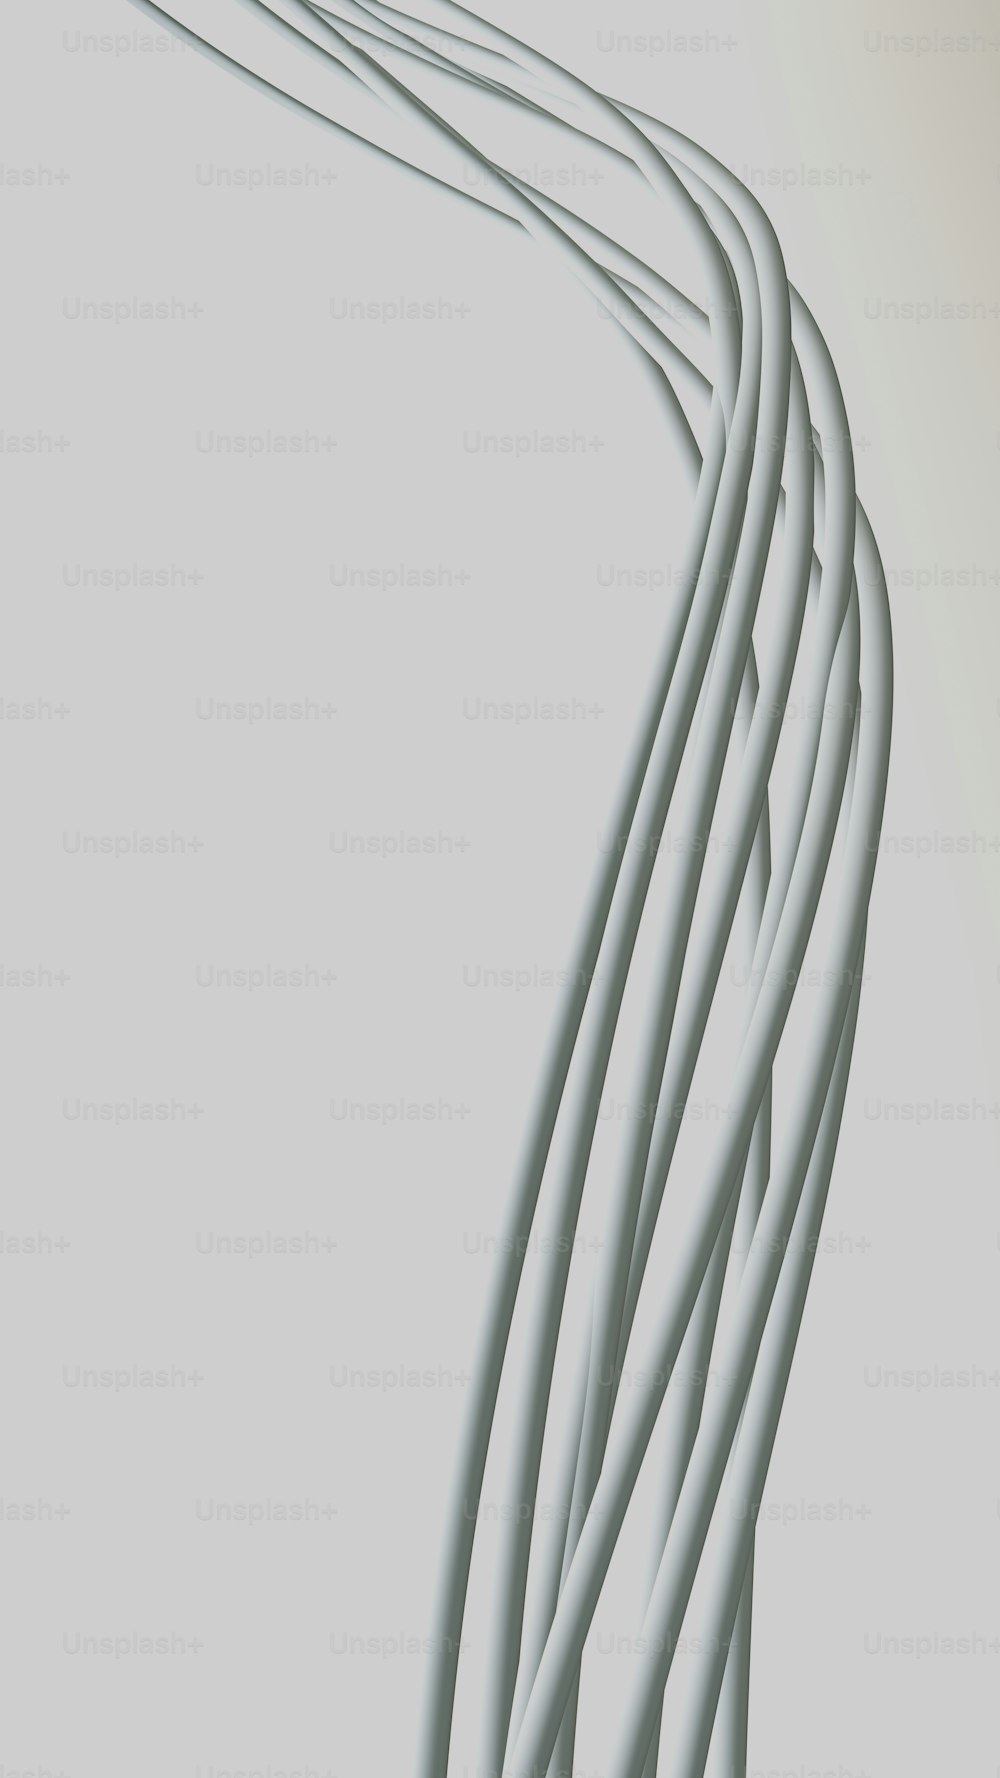 Una lunga fila di fili bianchi su sfondo grigio